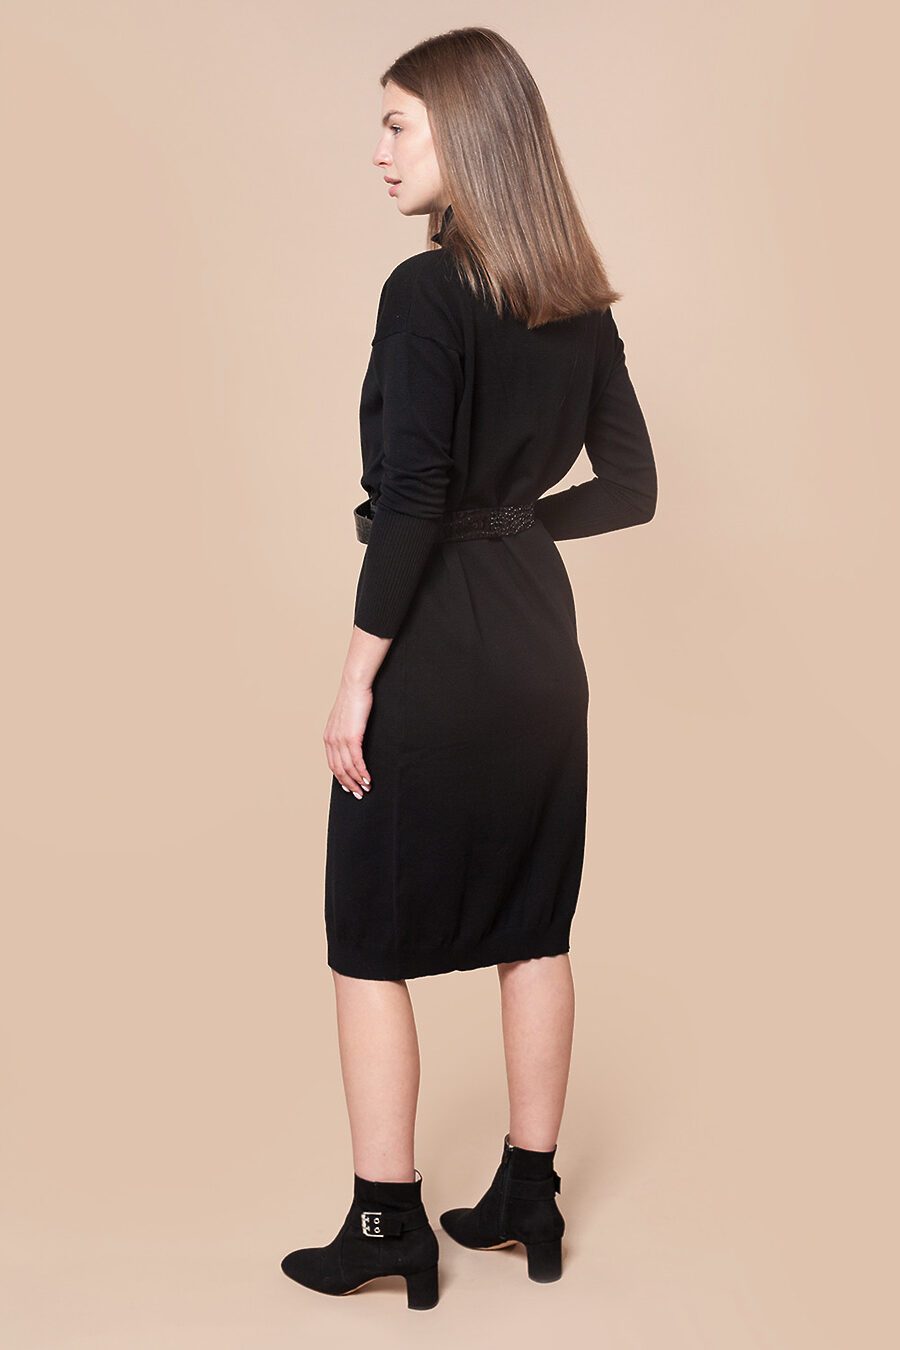 Платье для женщин VILATTE 795735 купить оптом от производителя. Совместная покупка женской одежды в OptMoyo